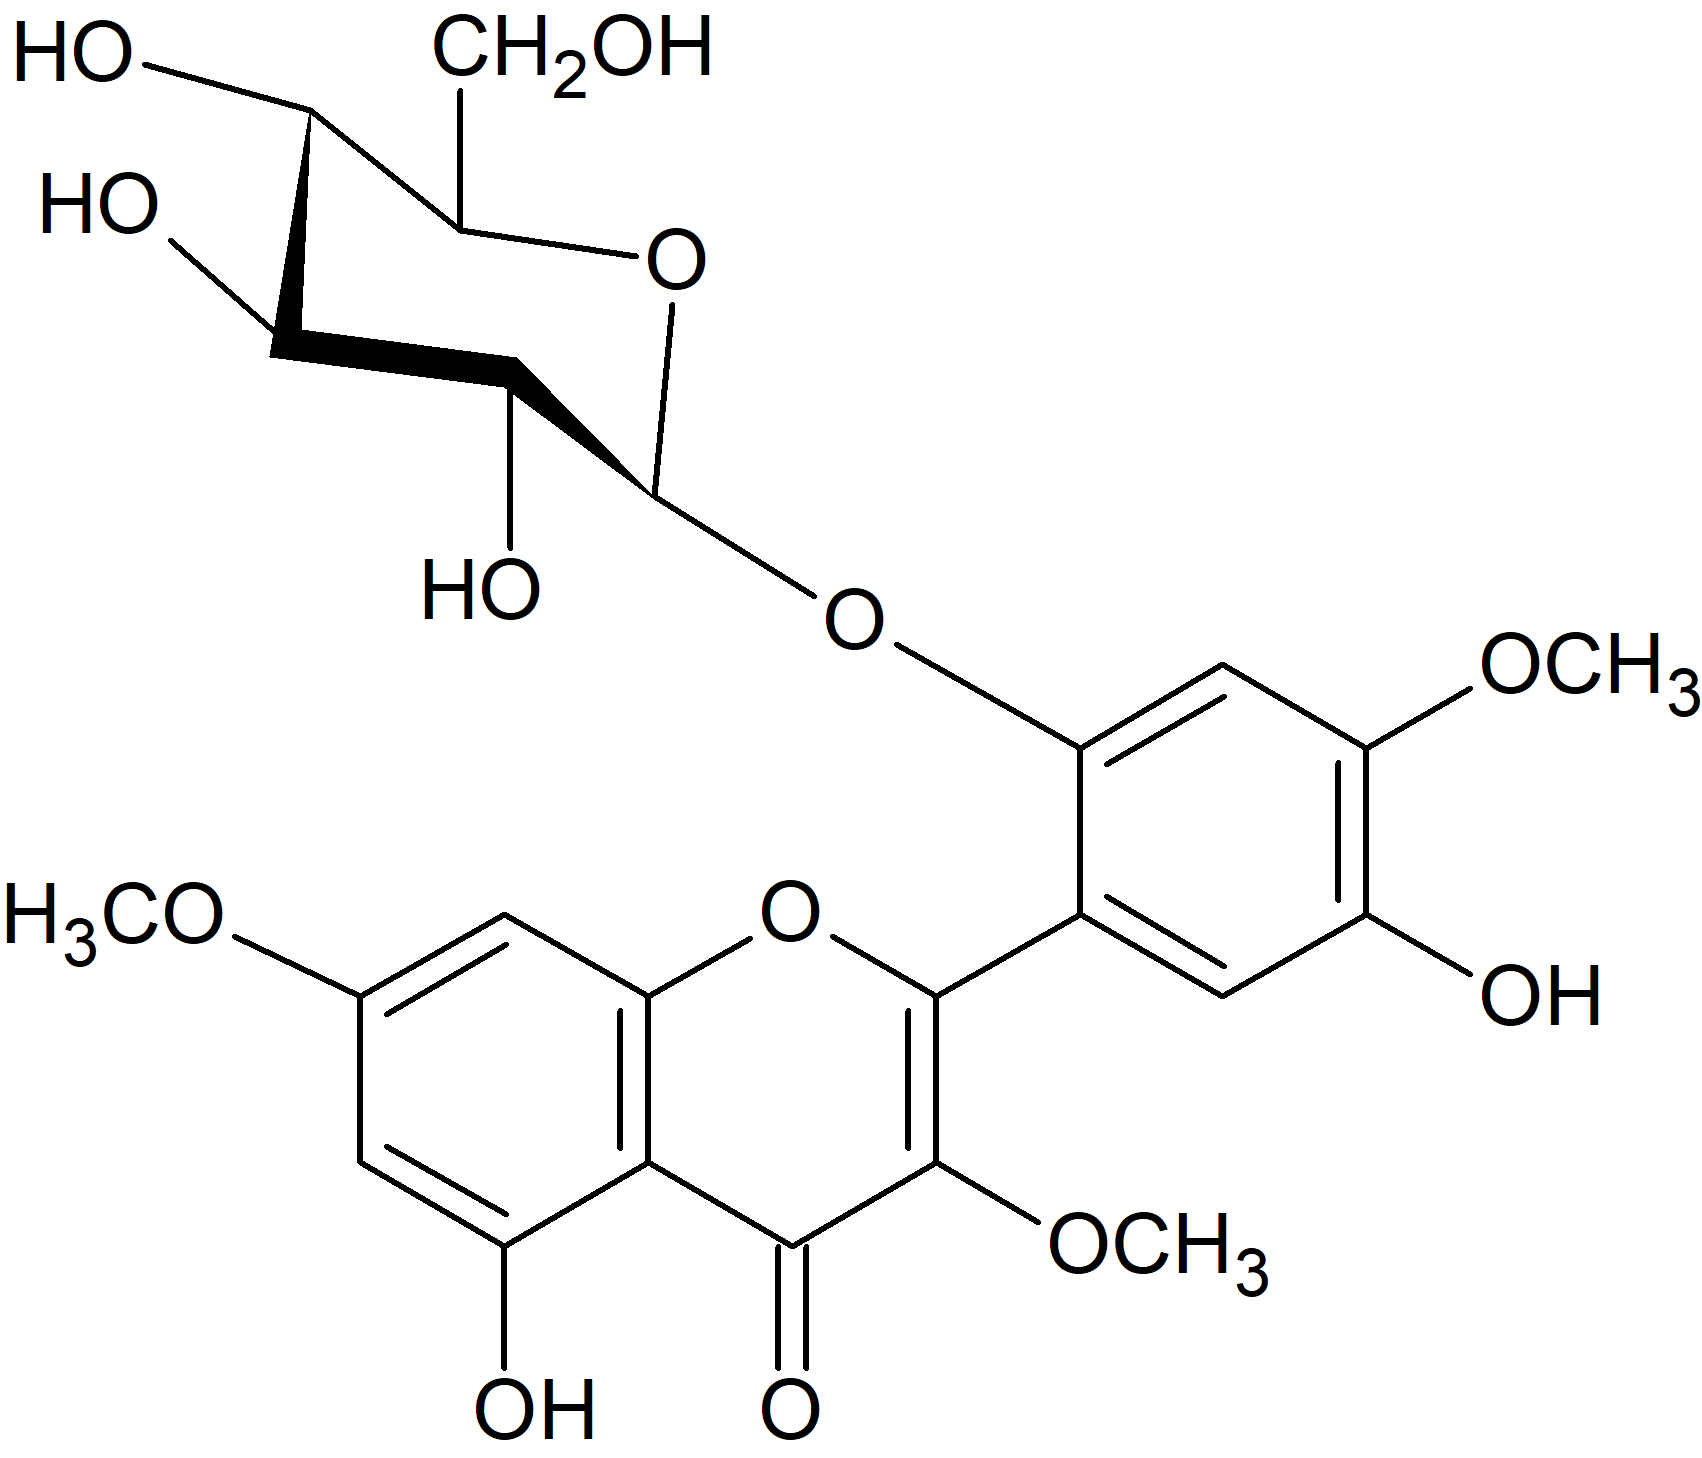 5,2',5'-Trihydroxy-3,7,4'-trimethoxyflavone 2'-glucoside